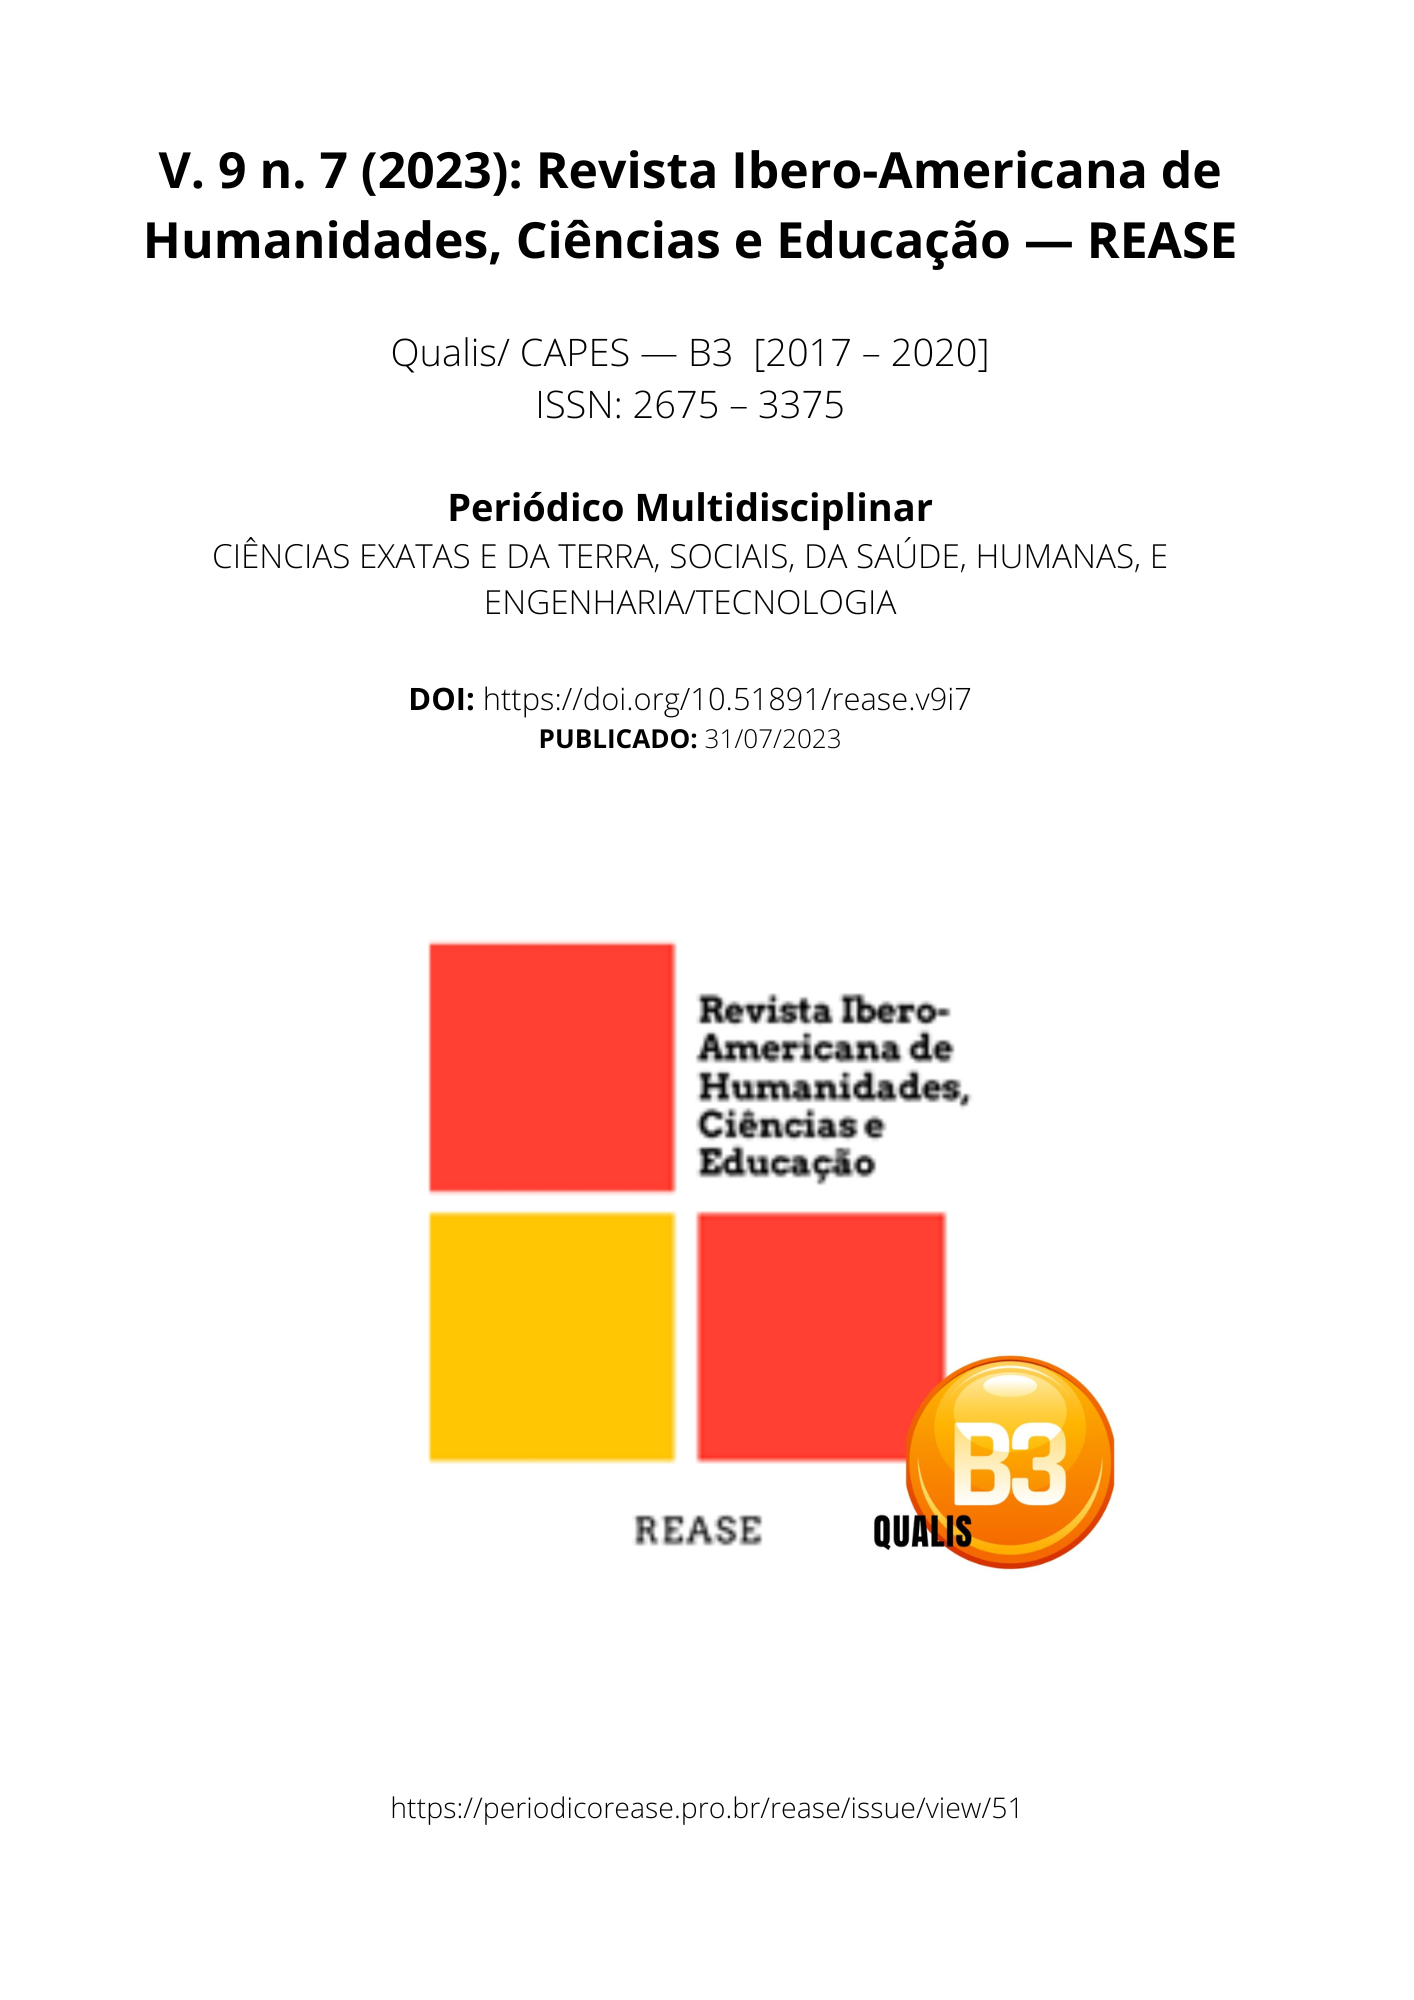 					Ver Vol. 9 Núm. 7 (2023): Revista Ibero-Americana de Humanidades, Ciências e Educação- REASE 
				